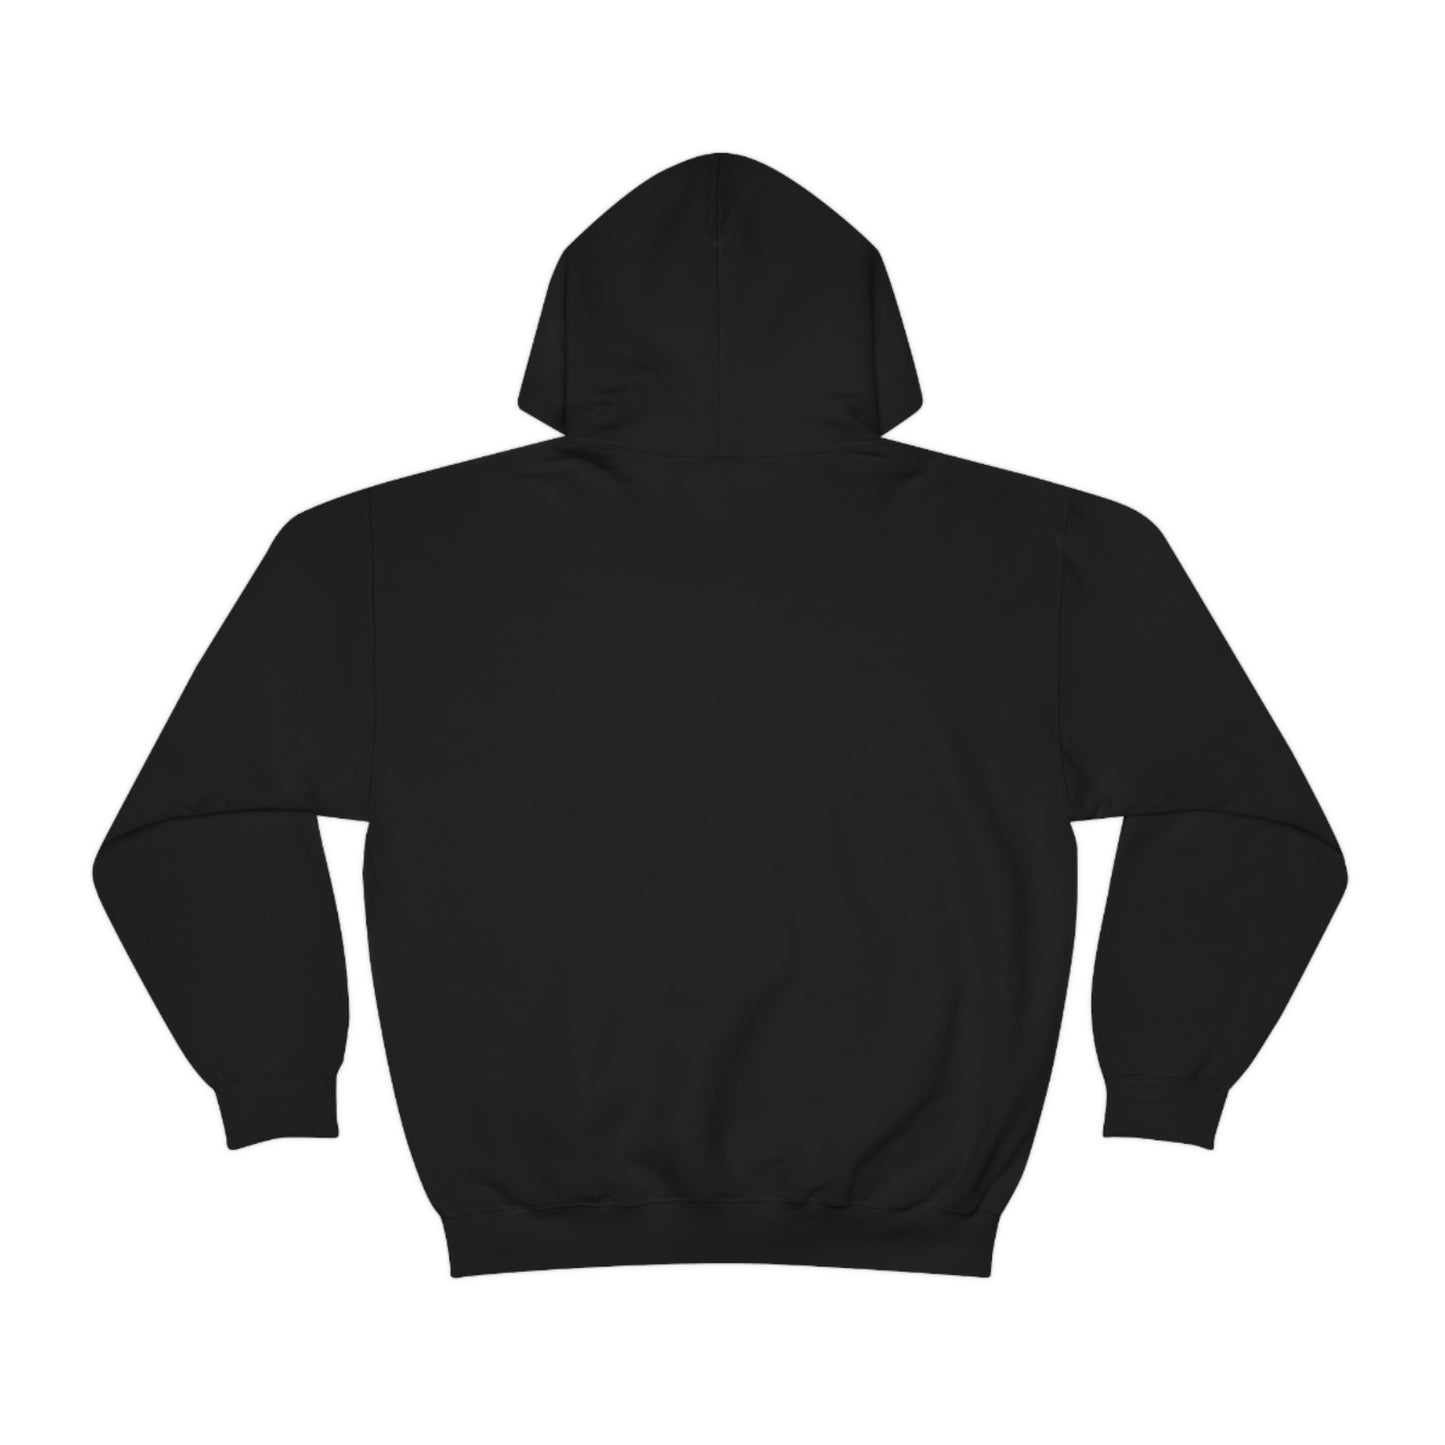 7-Eleven® Open 24 hours - Unisex Heavy Blend™ Hooded Sweatshirt